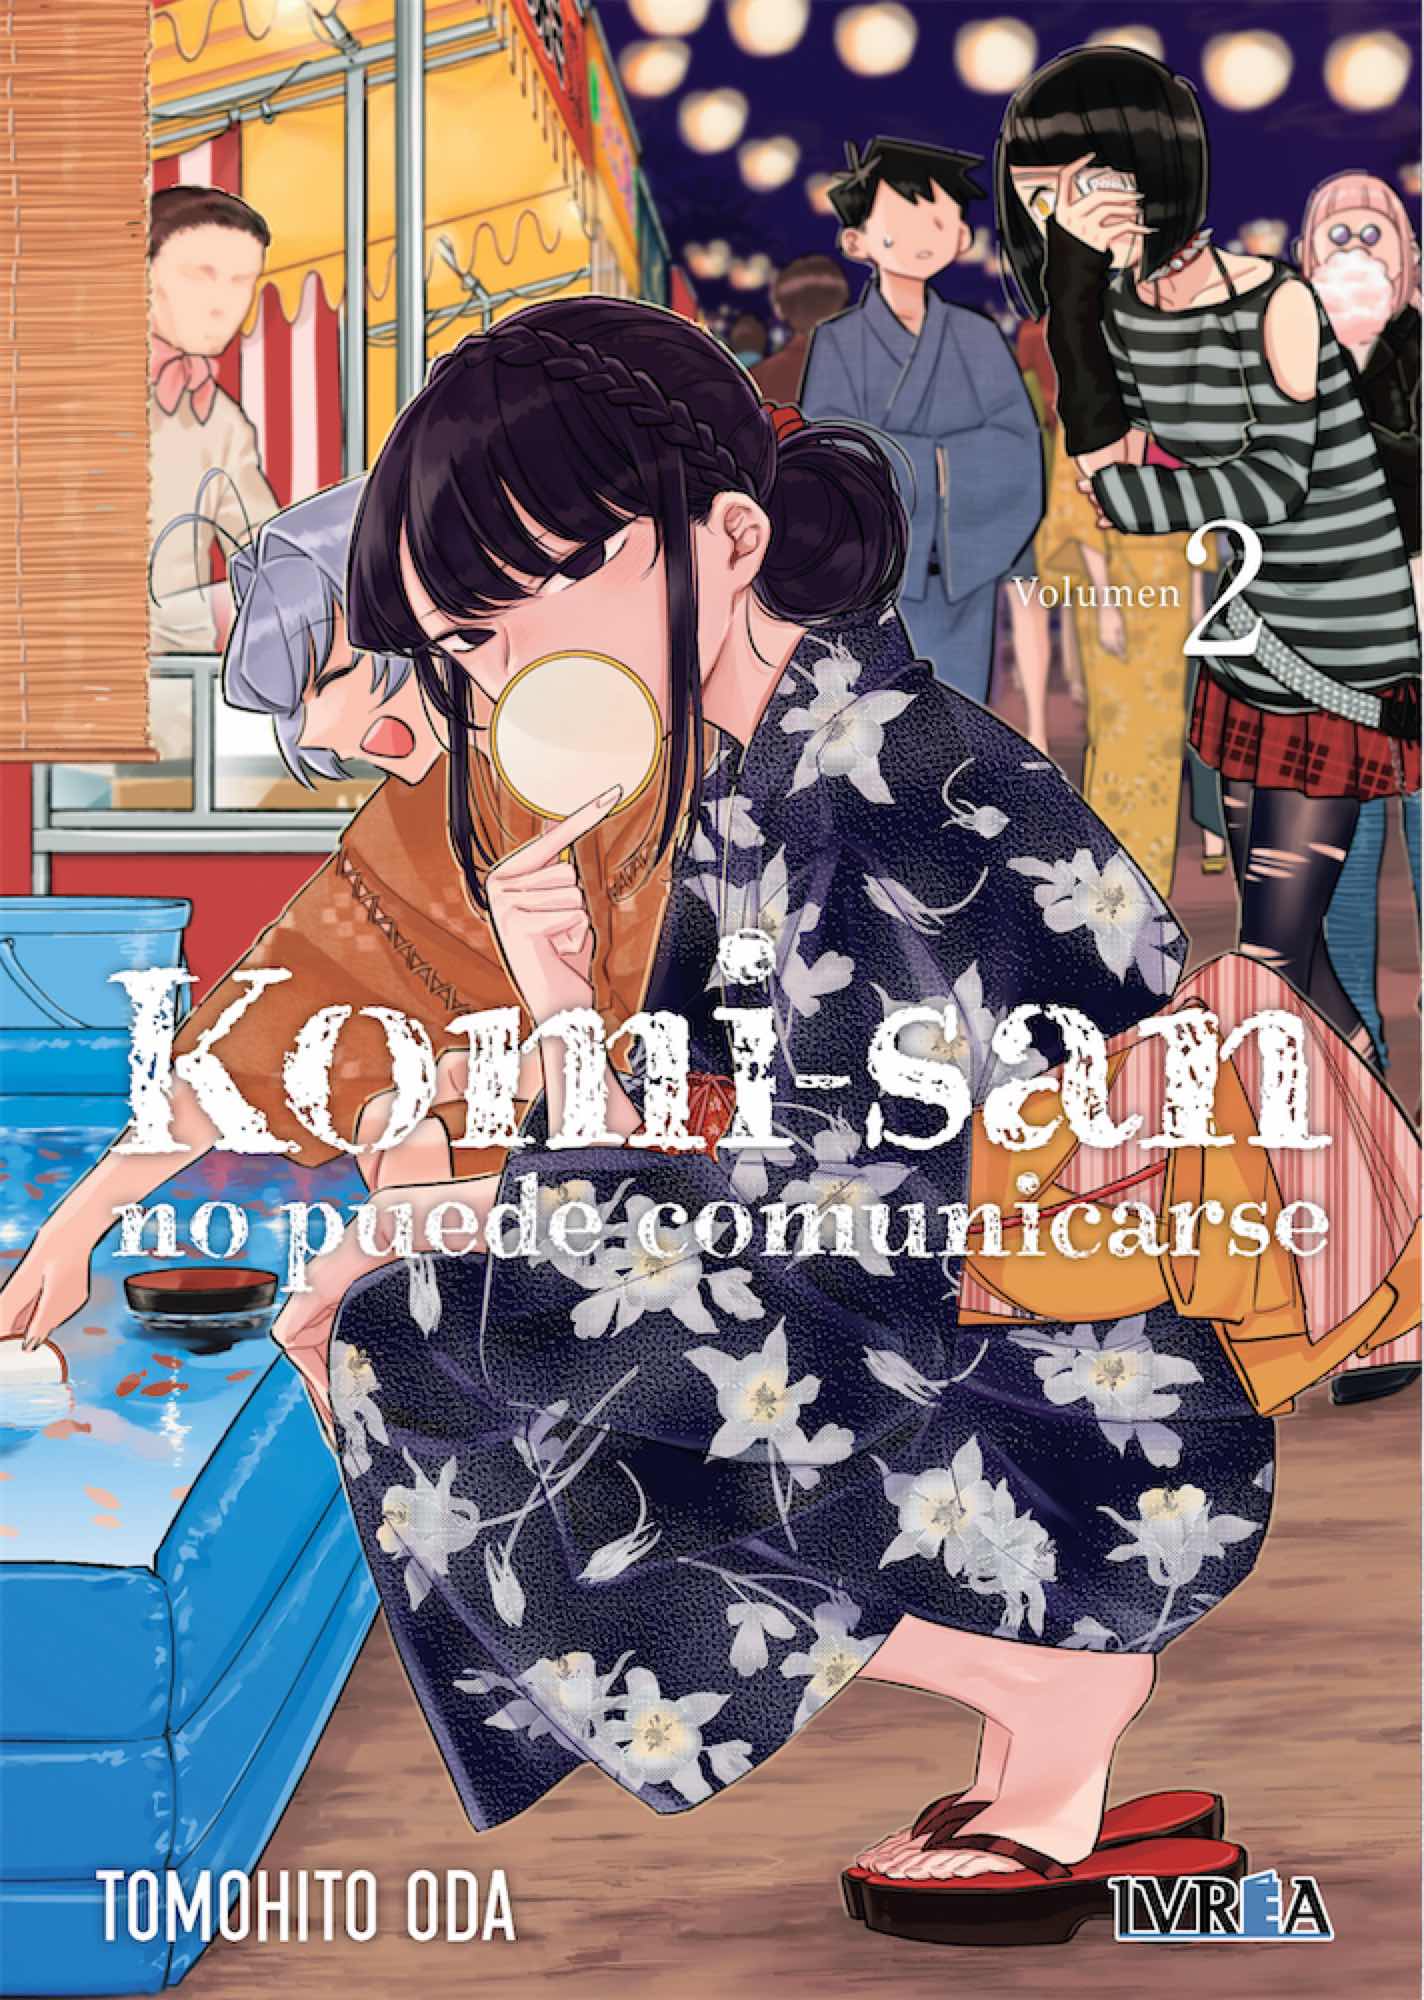 KOMI-SAN NO PUEDE COMUNICARSE 02 (REEDICION)